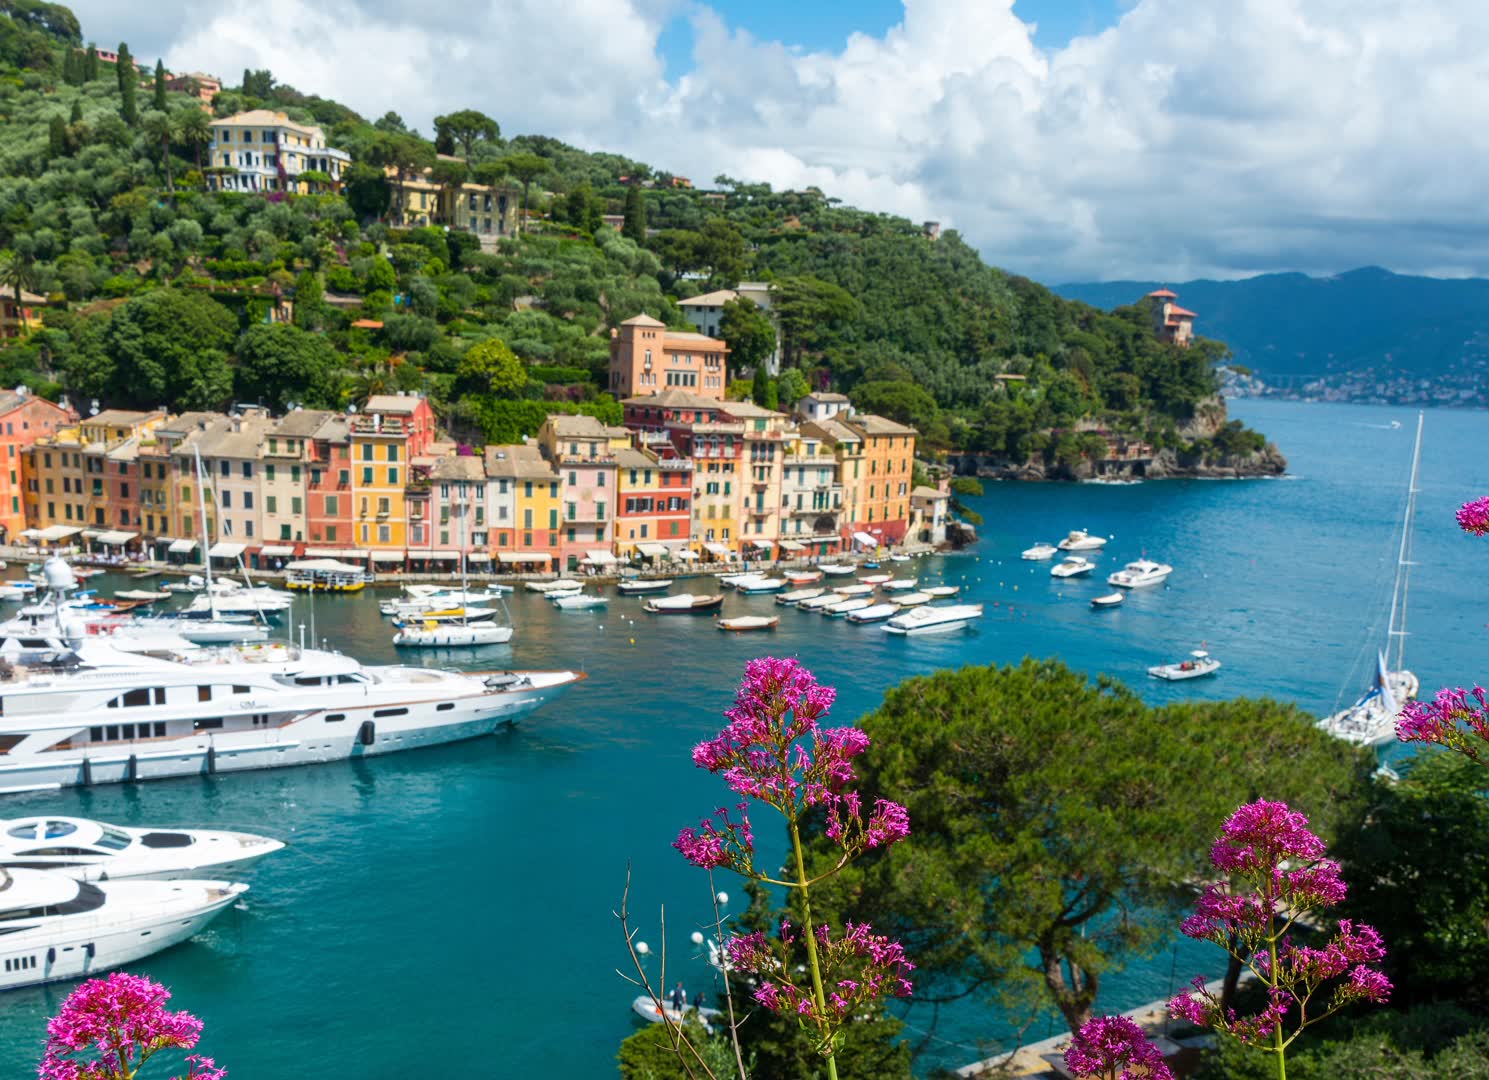 Vue aérienne du lac de Côme. JVO Voyage, votre agence de voyages en groupe par excellence, organise des excursions en Italie.